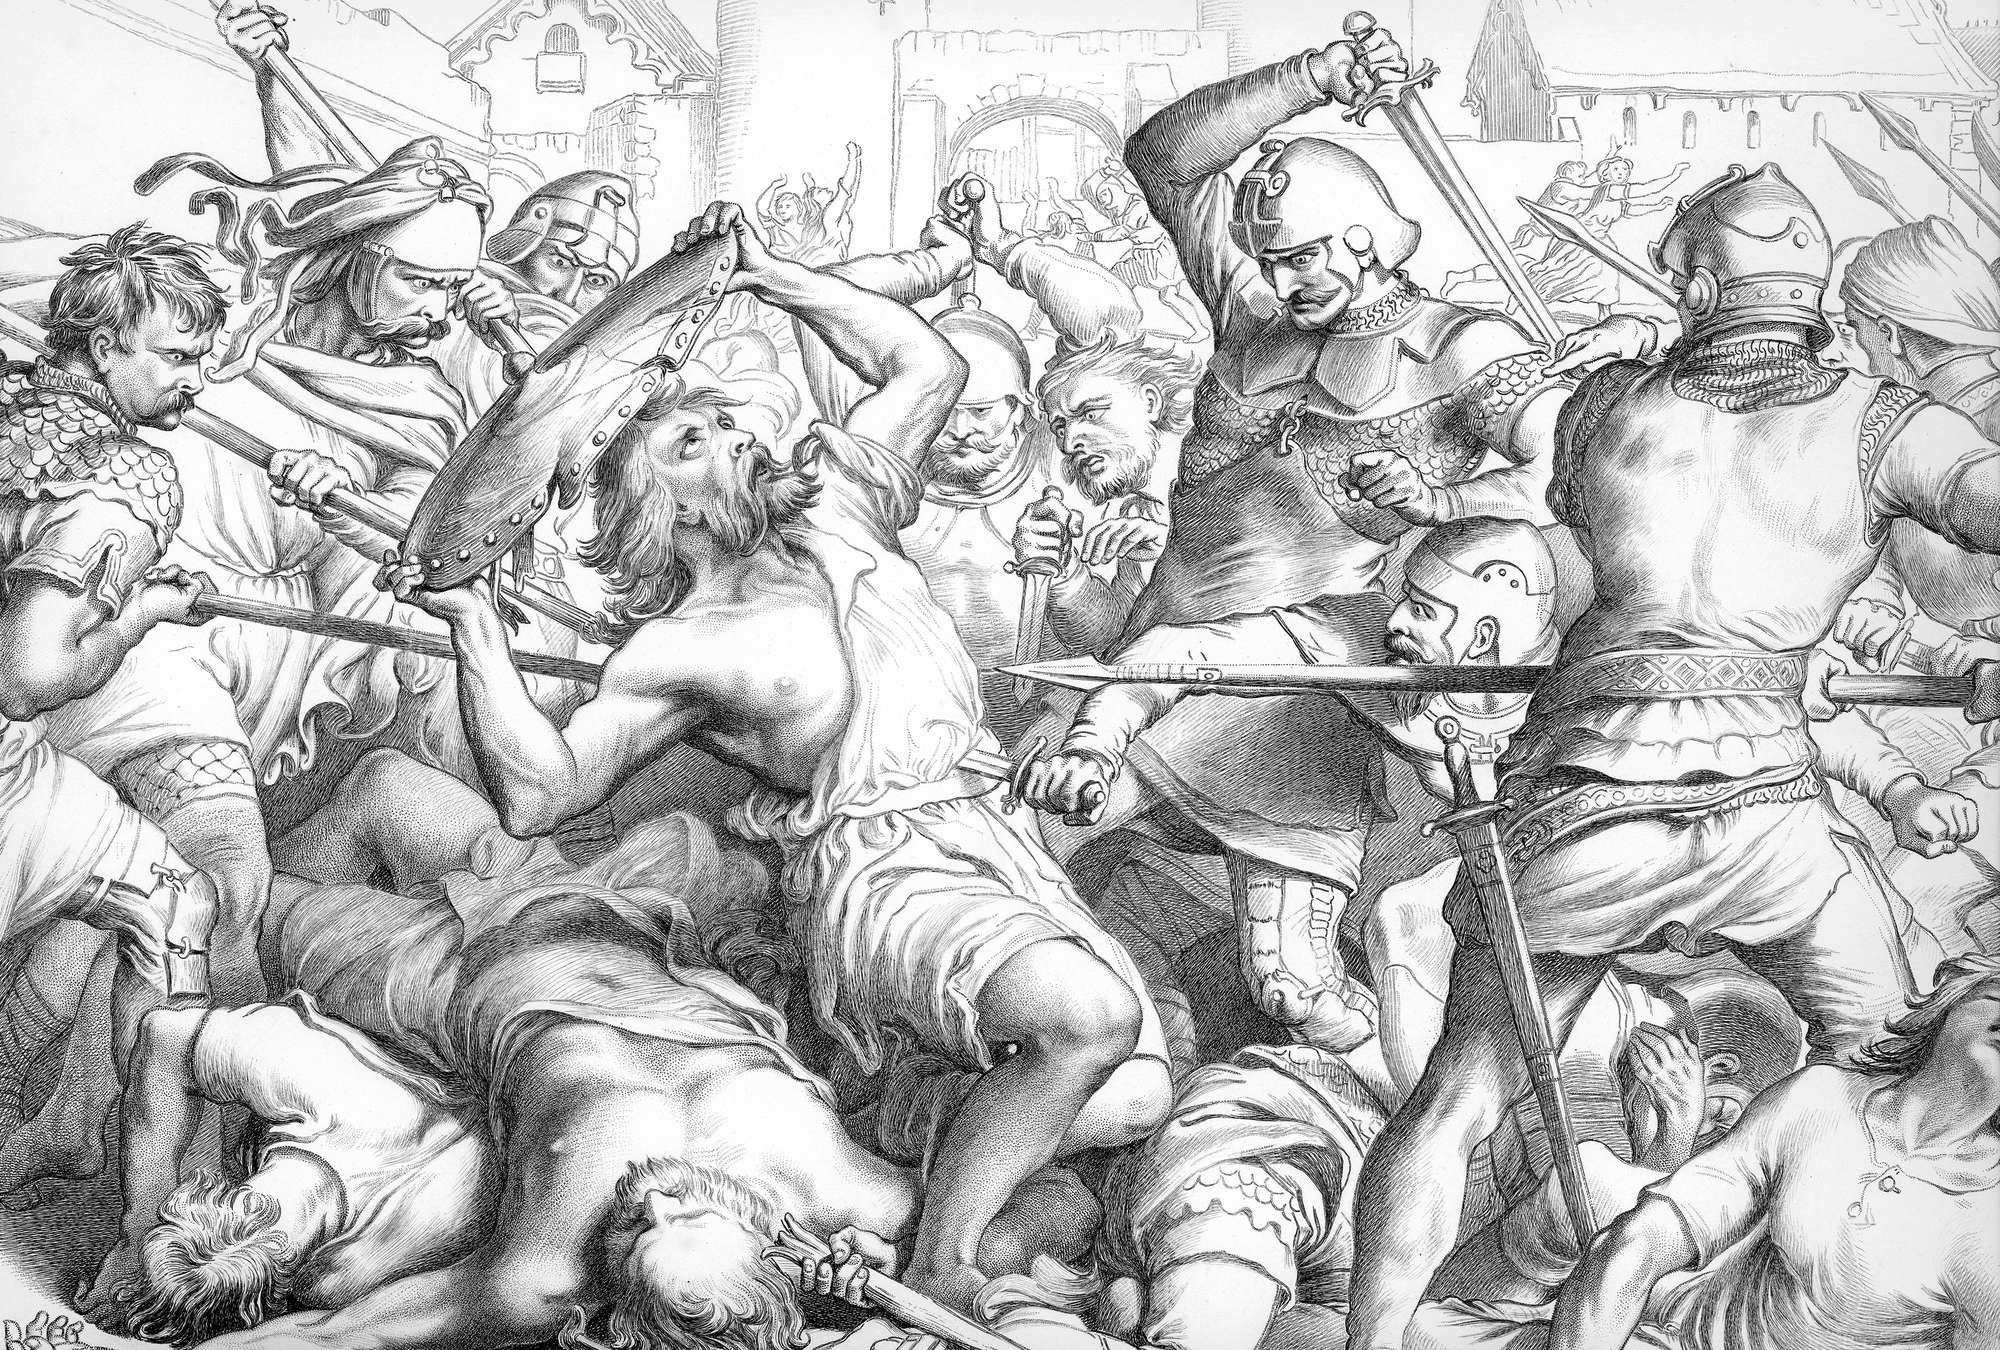             Disegno murale a matita «L'ultimo combattimento di Hereward the Wake».
        